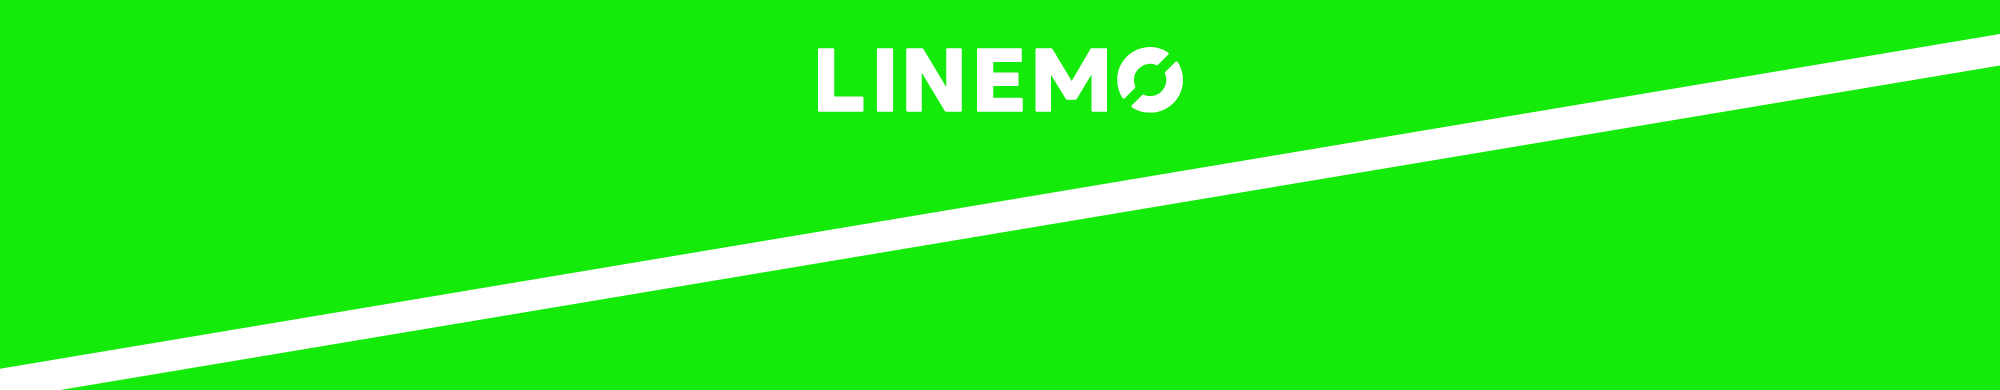 LINEをやるなら、LINEMO！月990円(税込)・3GBのミニプランと、月2728円(税込)・20GBのスマホプランは、両方ともキャリア品質の高速回線。